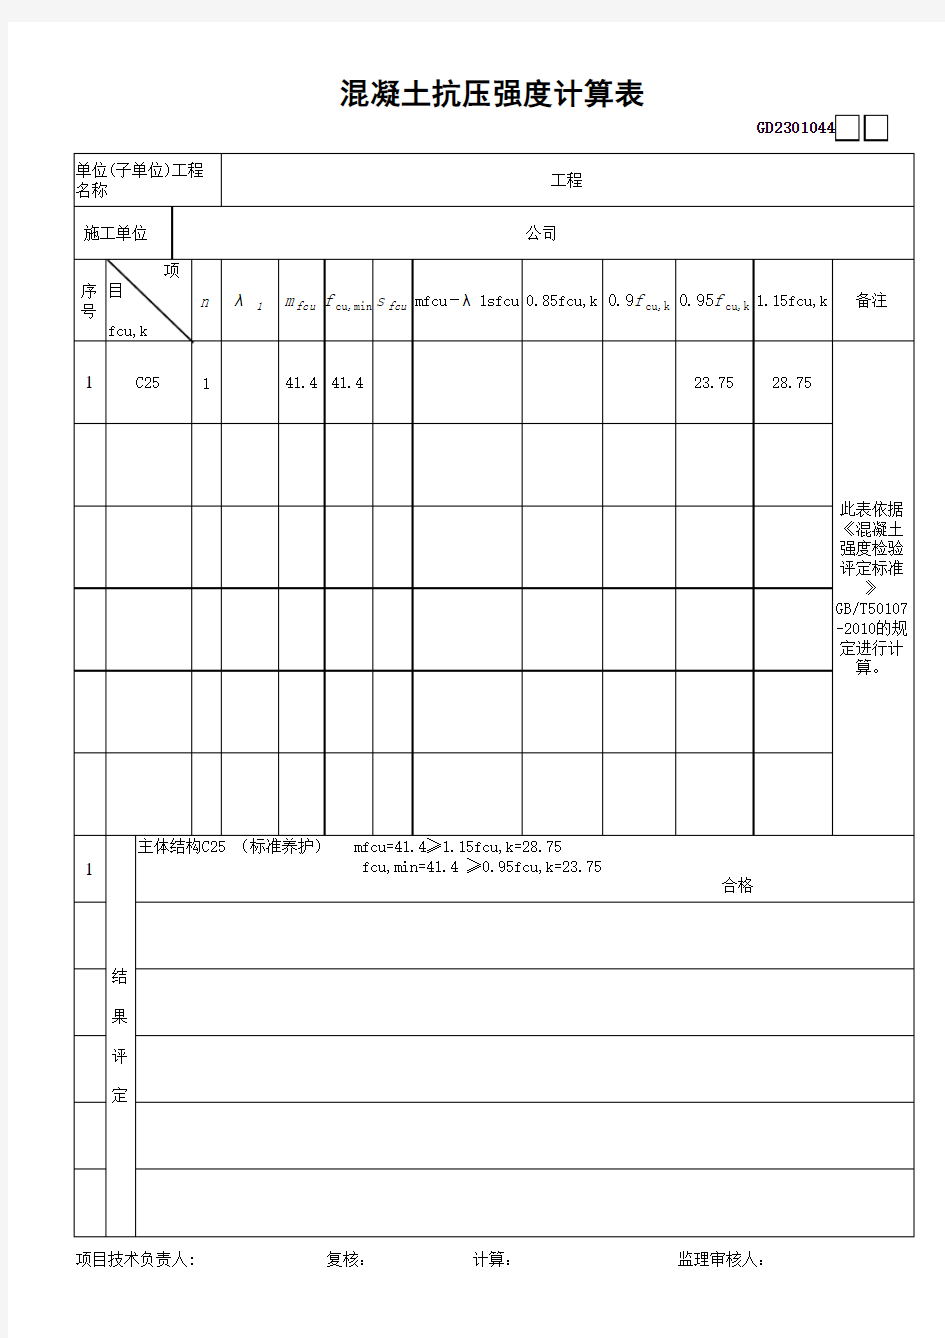 混凝土抗压强度计算表(标养、同条件养护新表)